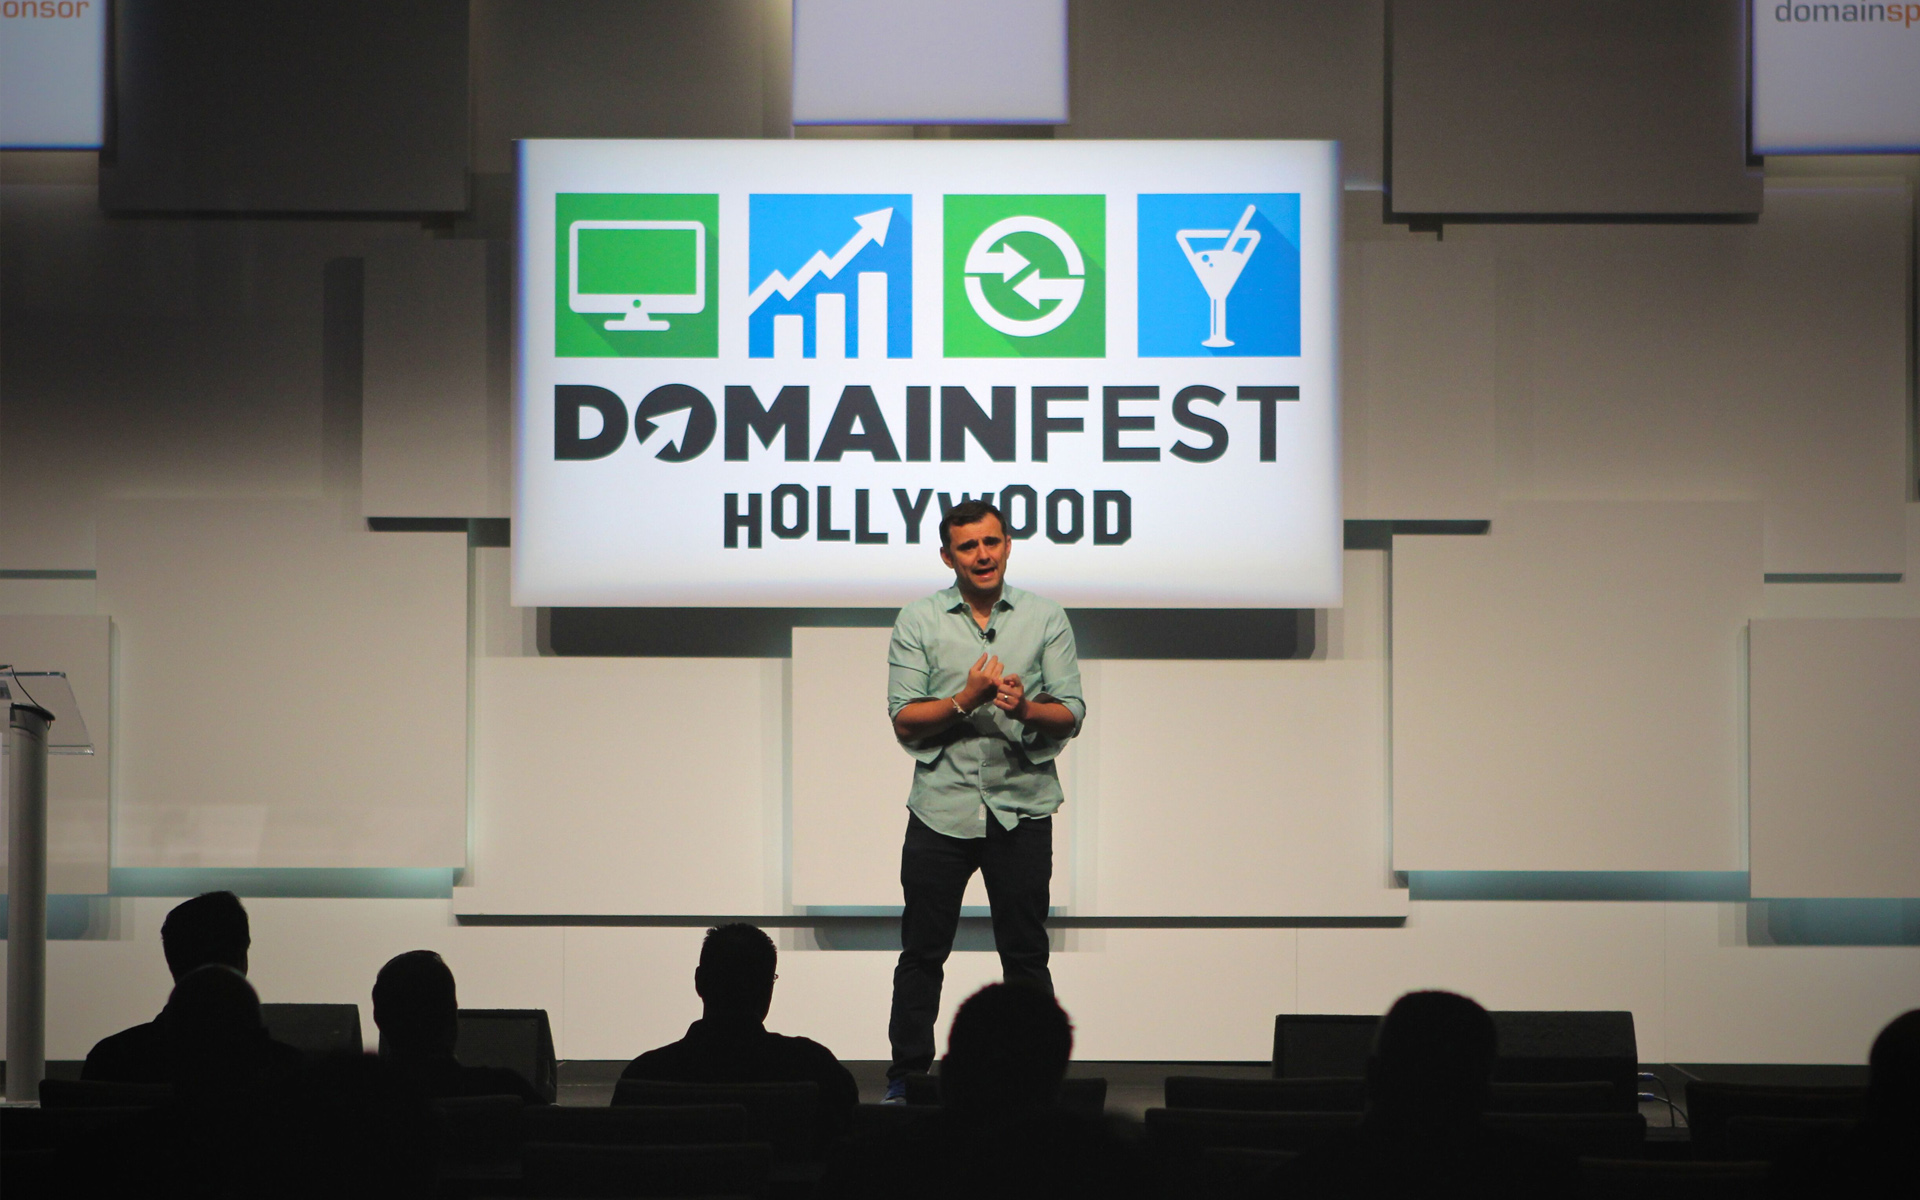 Domainfest